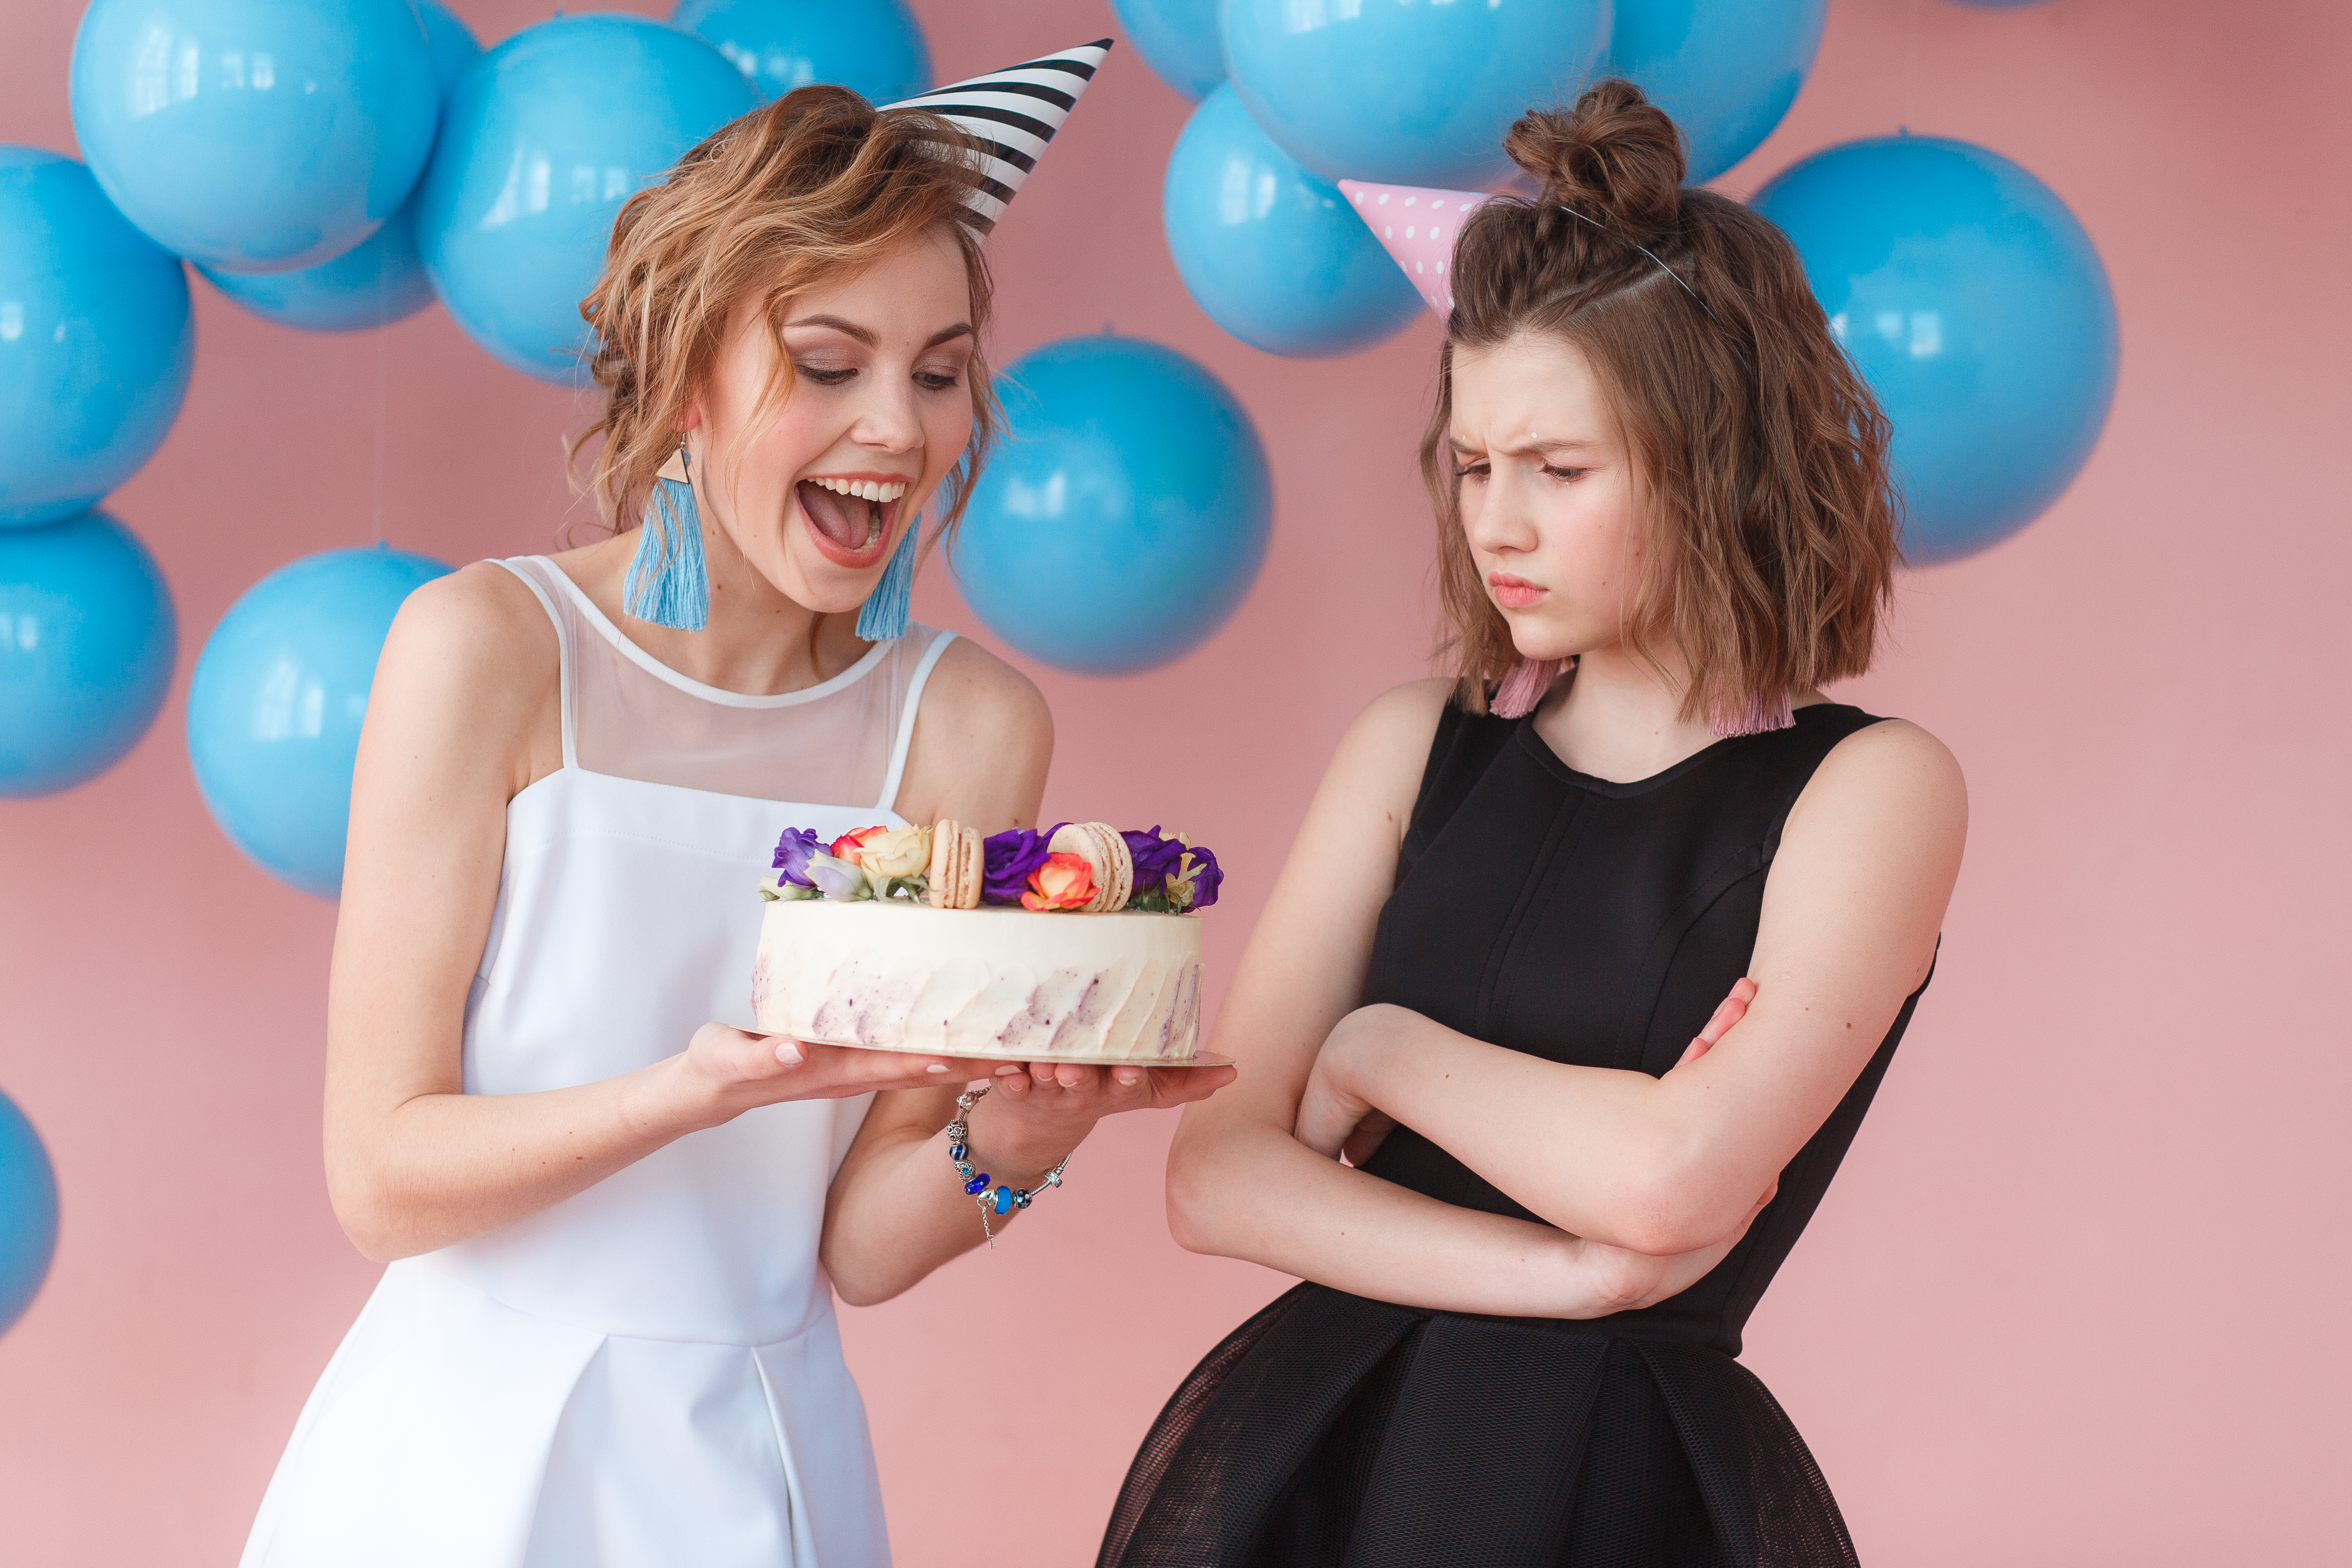 Deux adolescentes tenant un gâteau d'anniversaire, l'une souriant et l'autre fronçant les sourcils | Source : Freepik